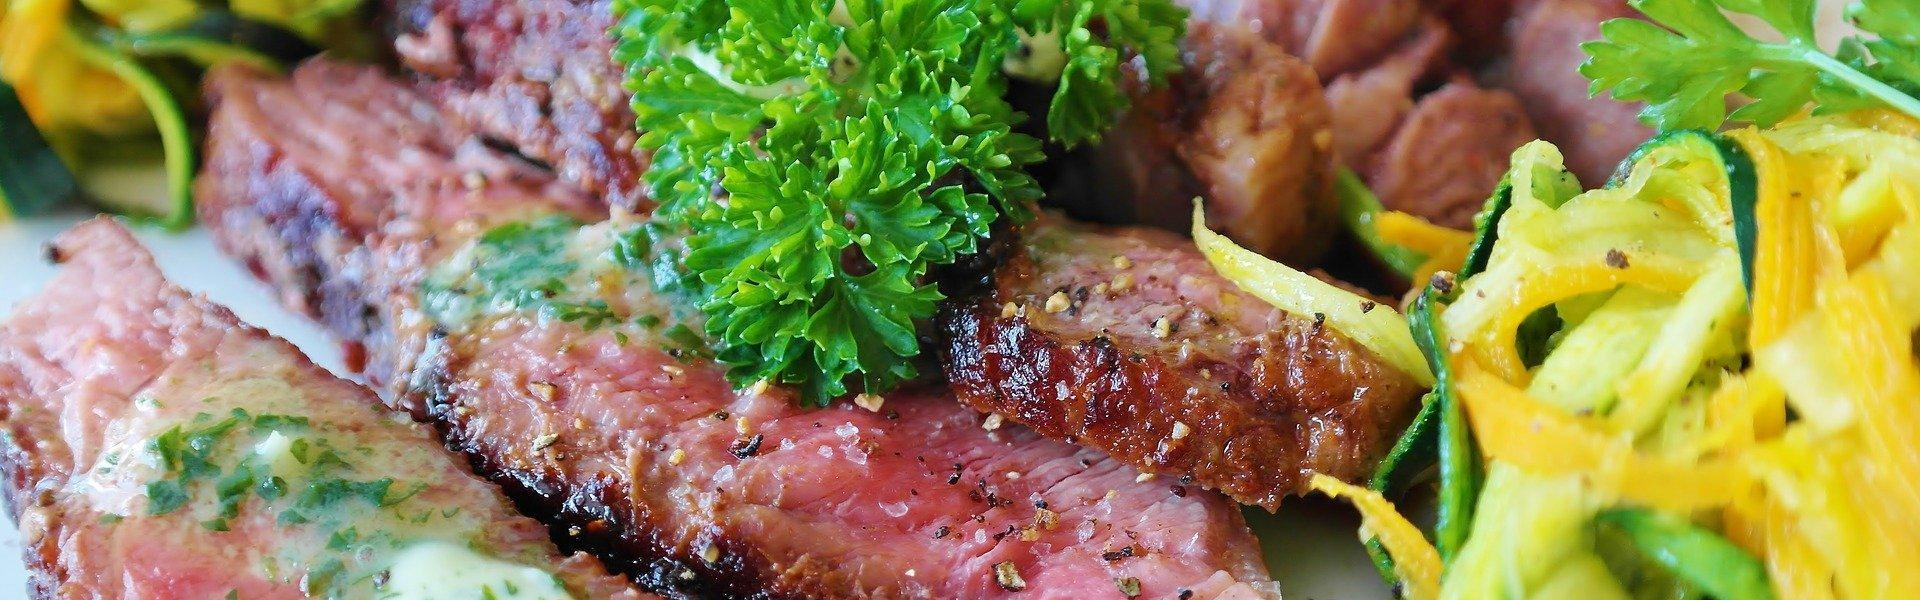 Steak Restaurant Empfehlungen im Allgäu